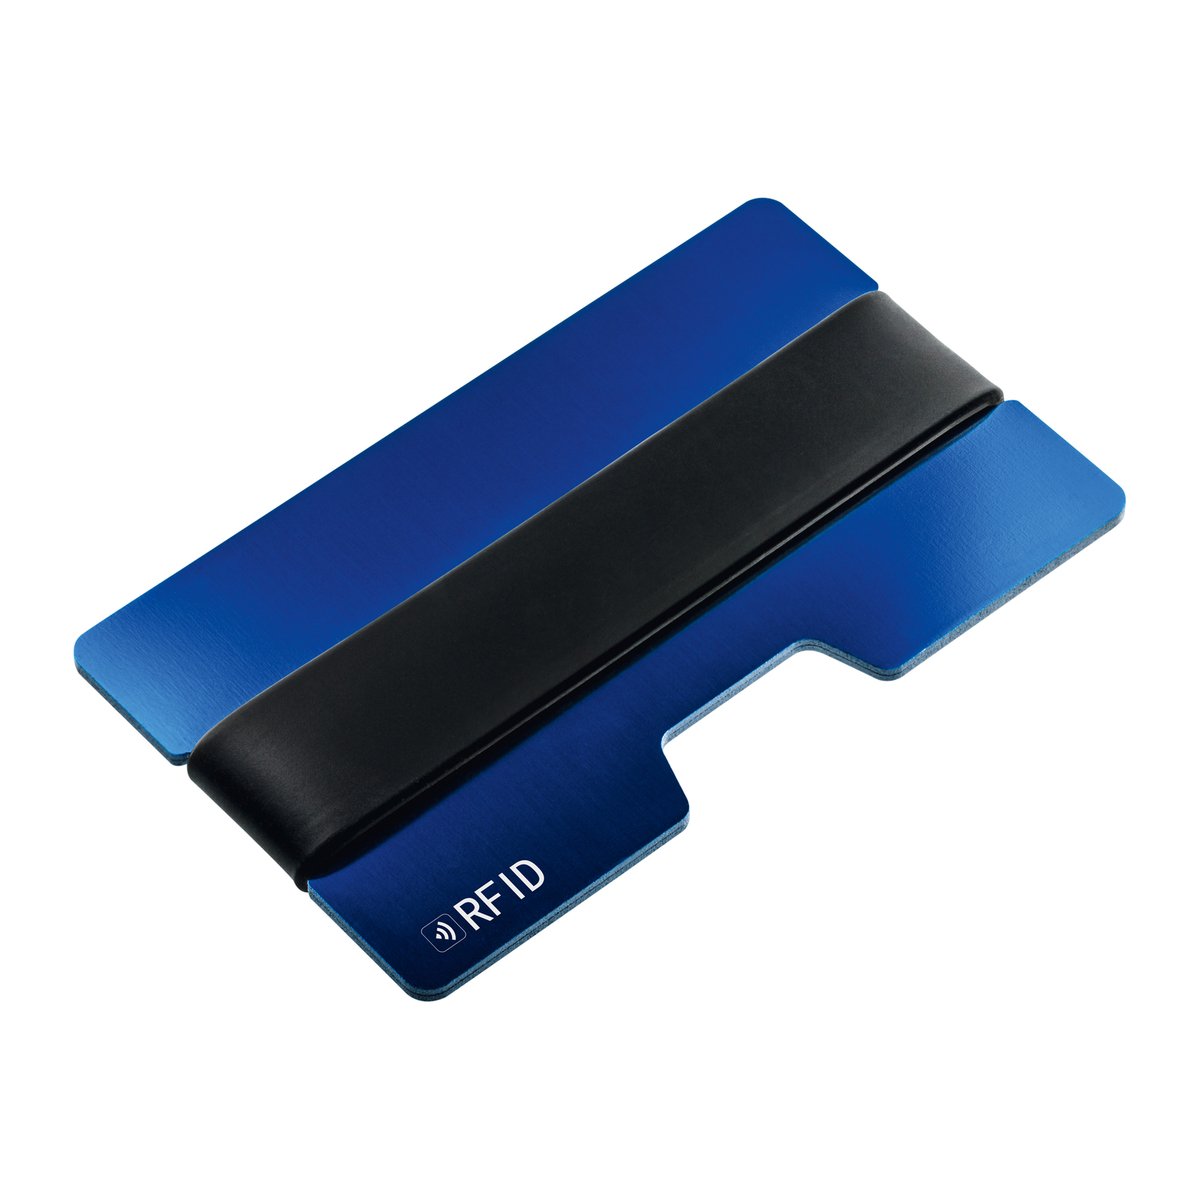 Kartenetui mit RFID Ausleseschutz RE98-SAKUMONO blau